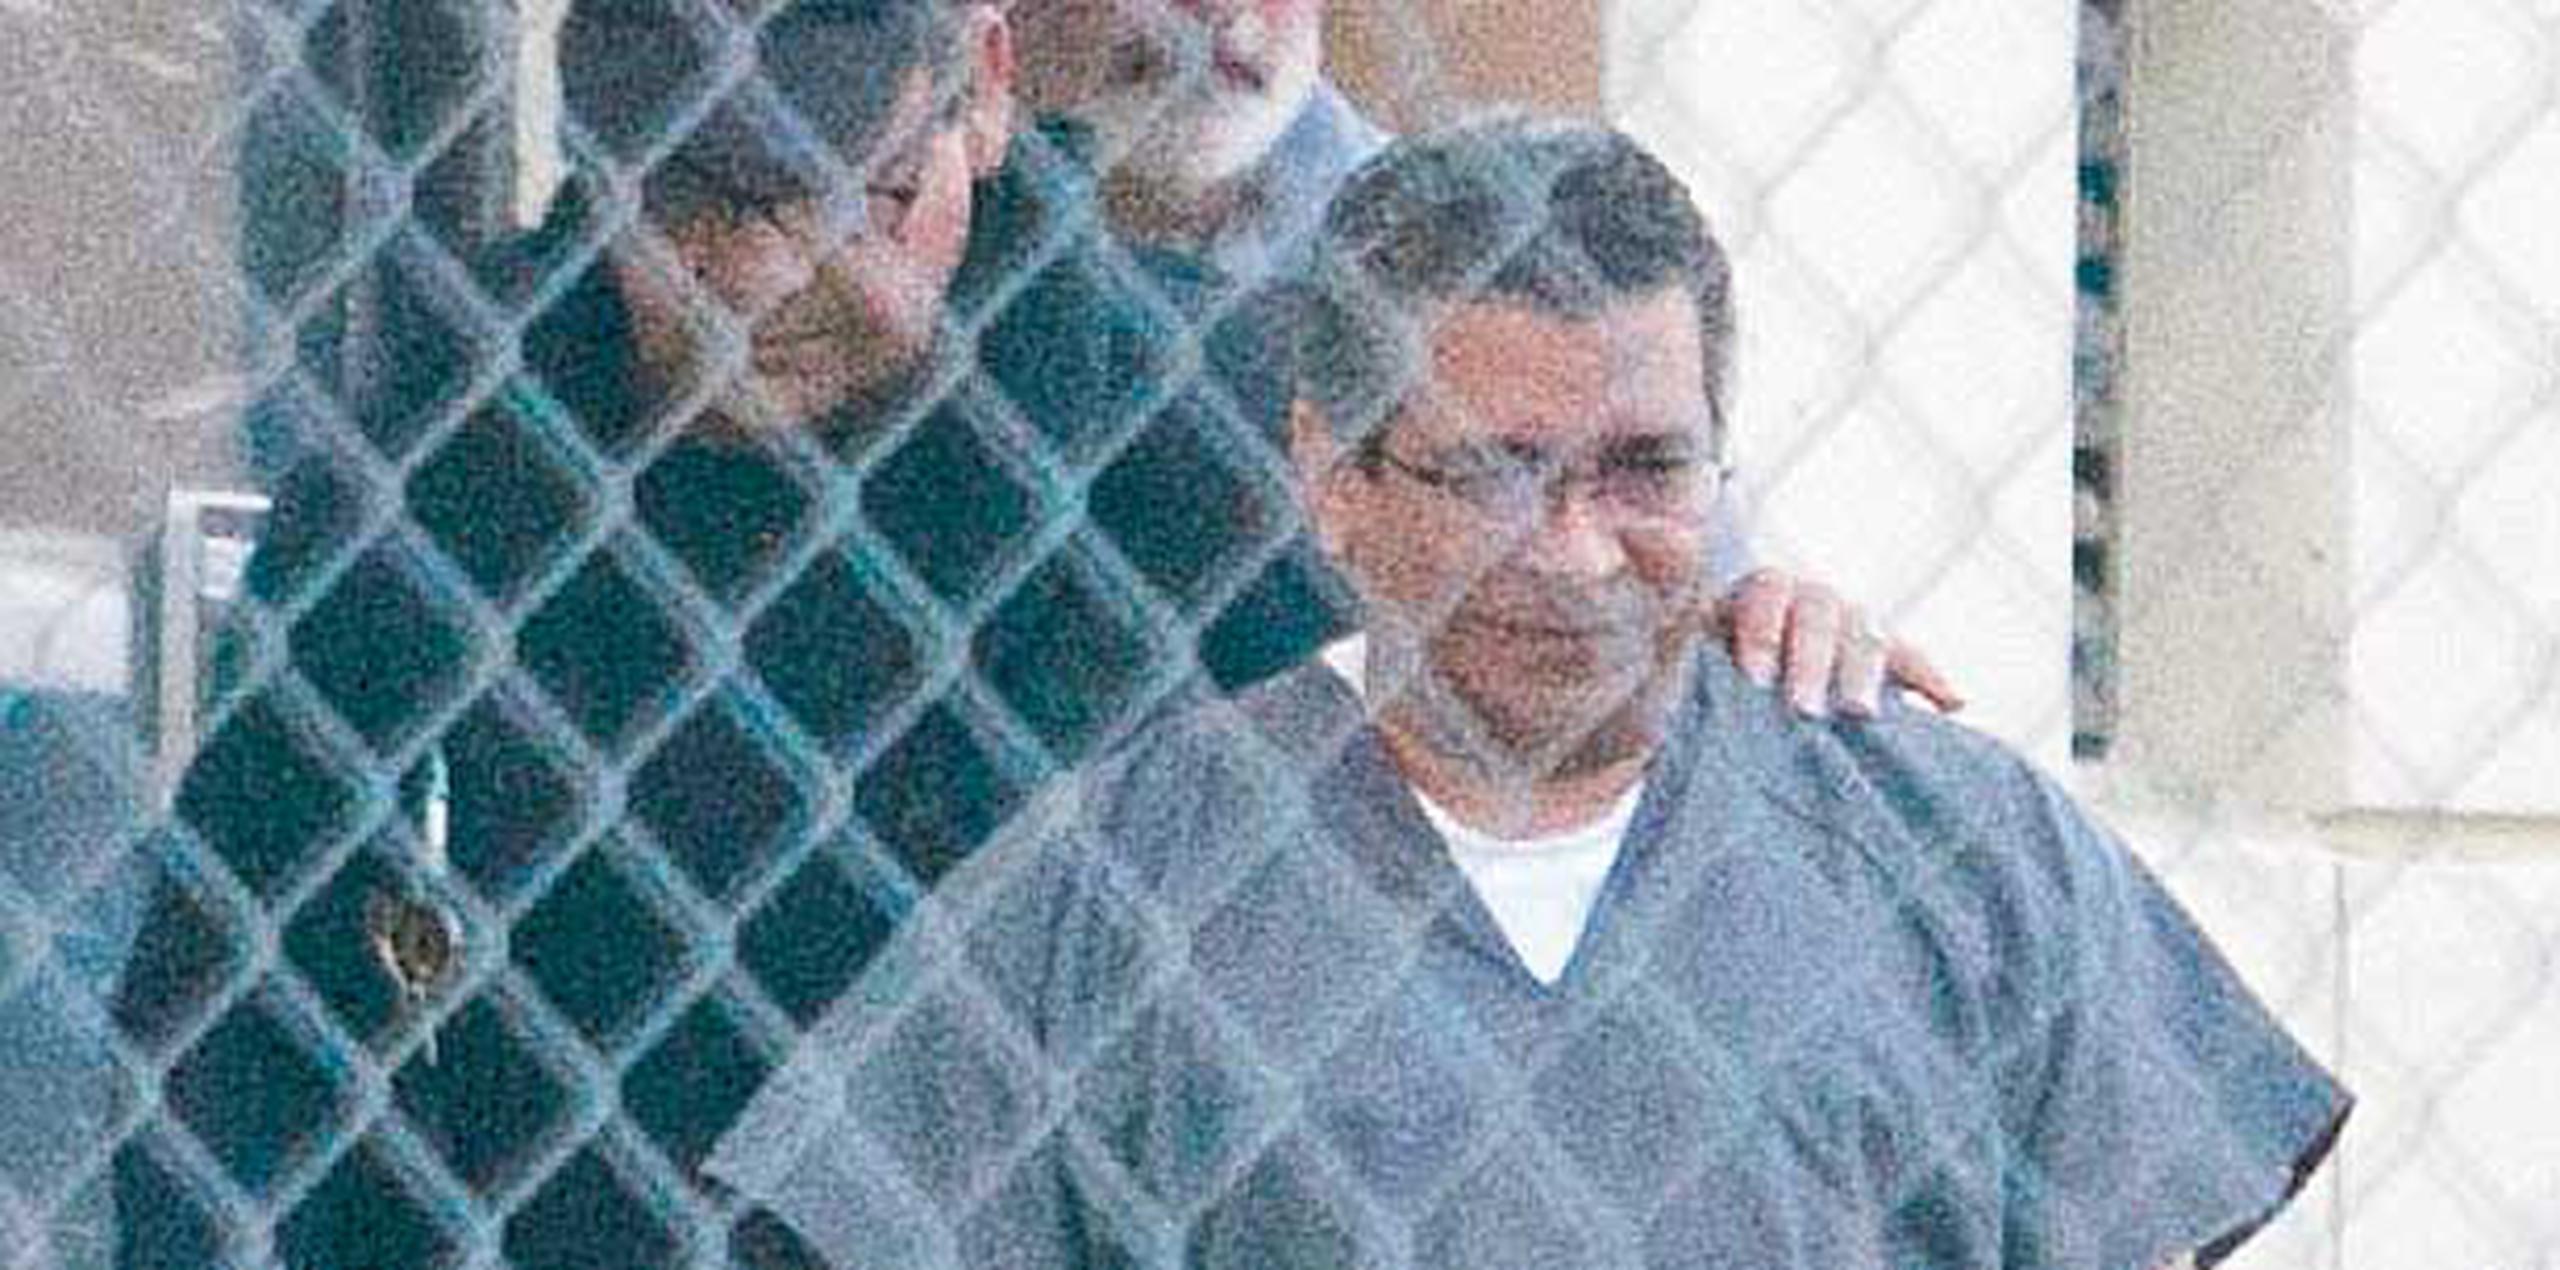 El 18 de noviembre de 2013, el juez Gelpí sentenció a Hilton Cordero 10 años de cárcel y 15 años de libertad supervisada. (Archivo)